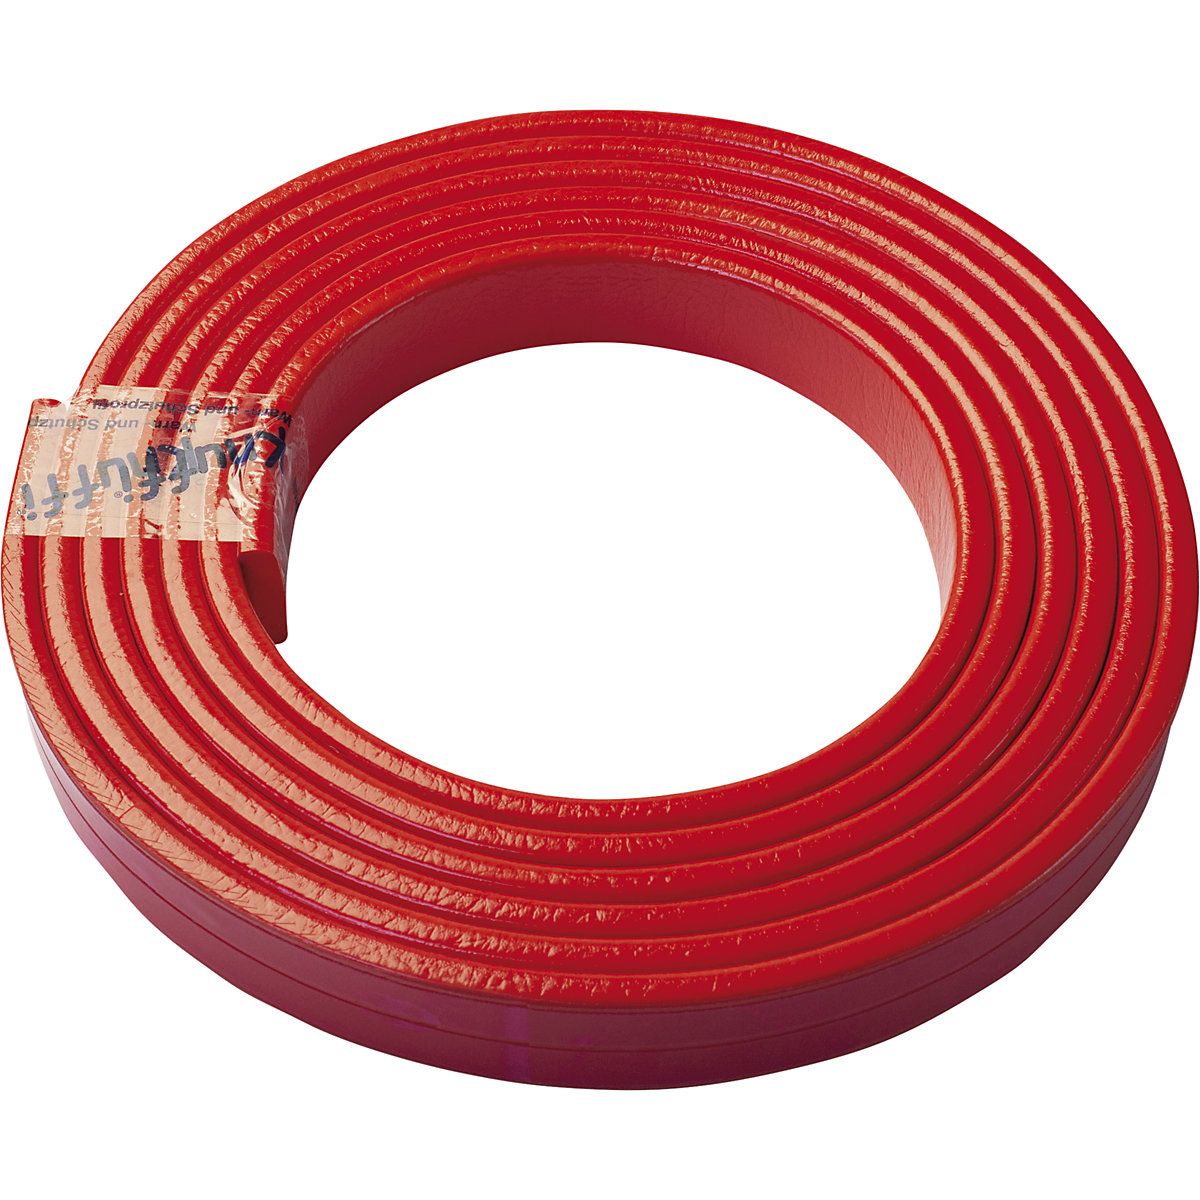 Knuffi® felületvédő – SHG, F típus, 1 db 5 m-es tekercs, piros-24